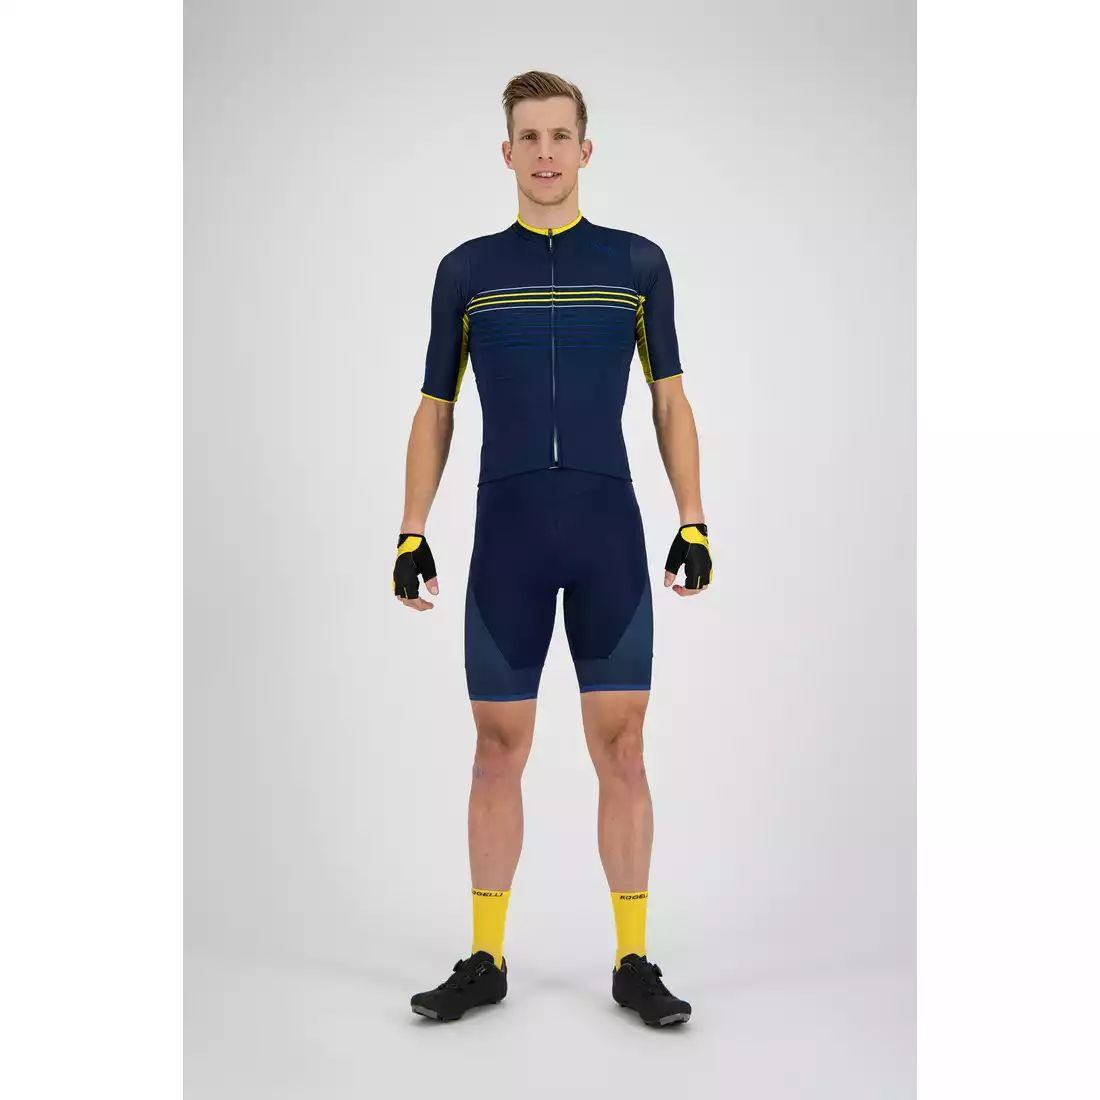 Rogelli Kalon 001.090 męska koszulka rowerowa Niebieski/Żółty 